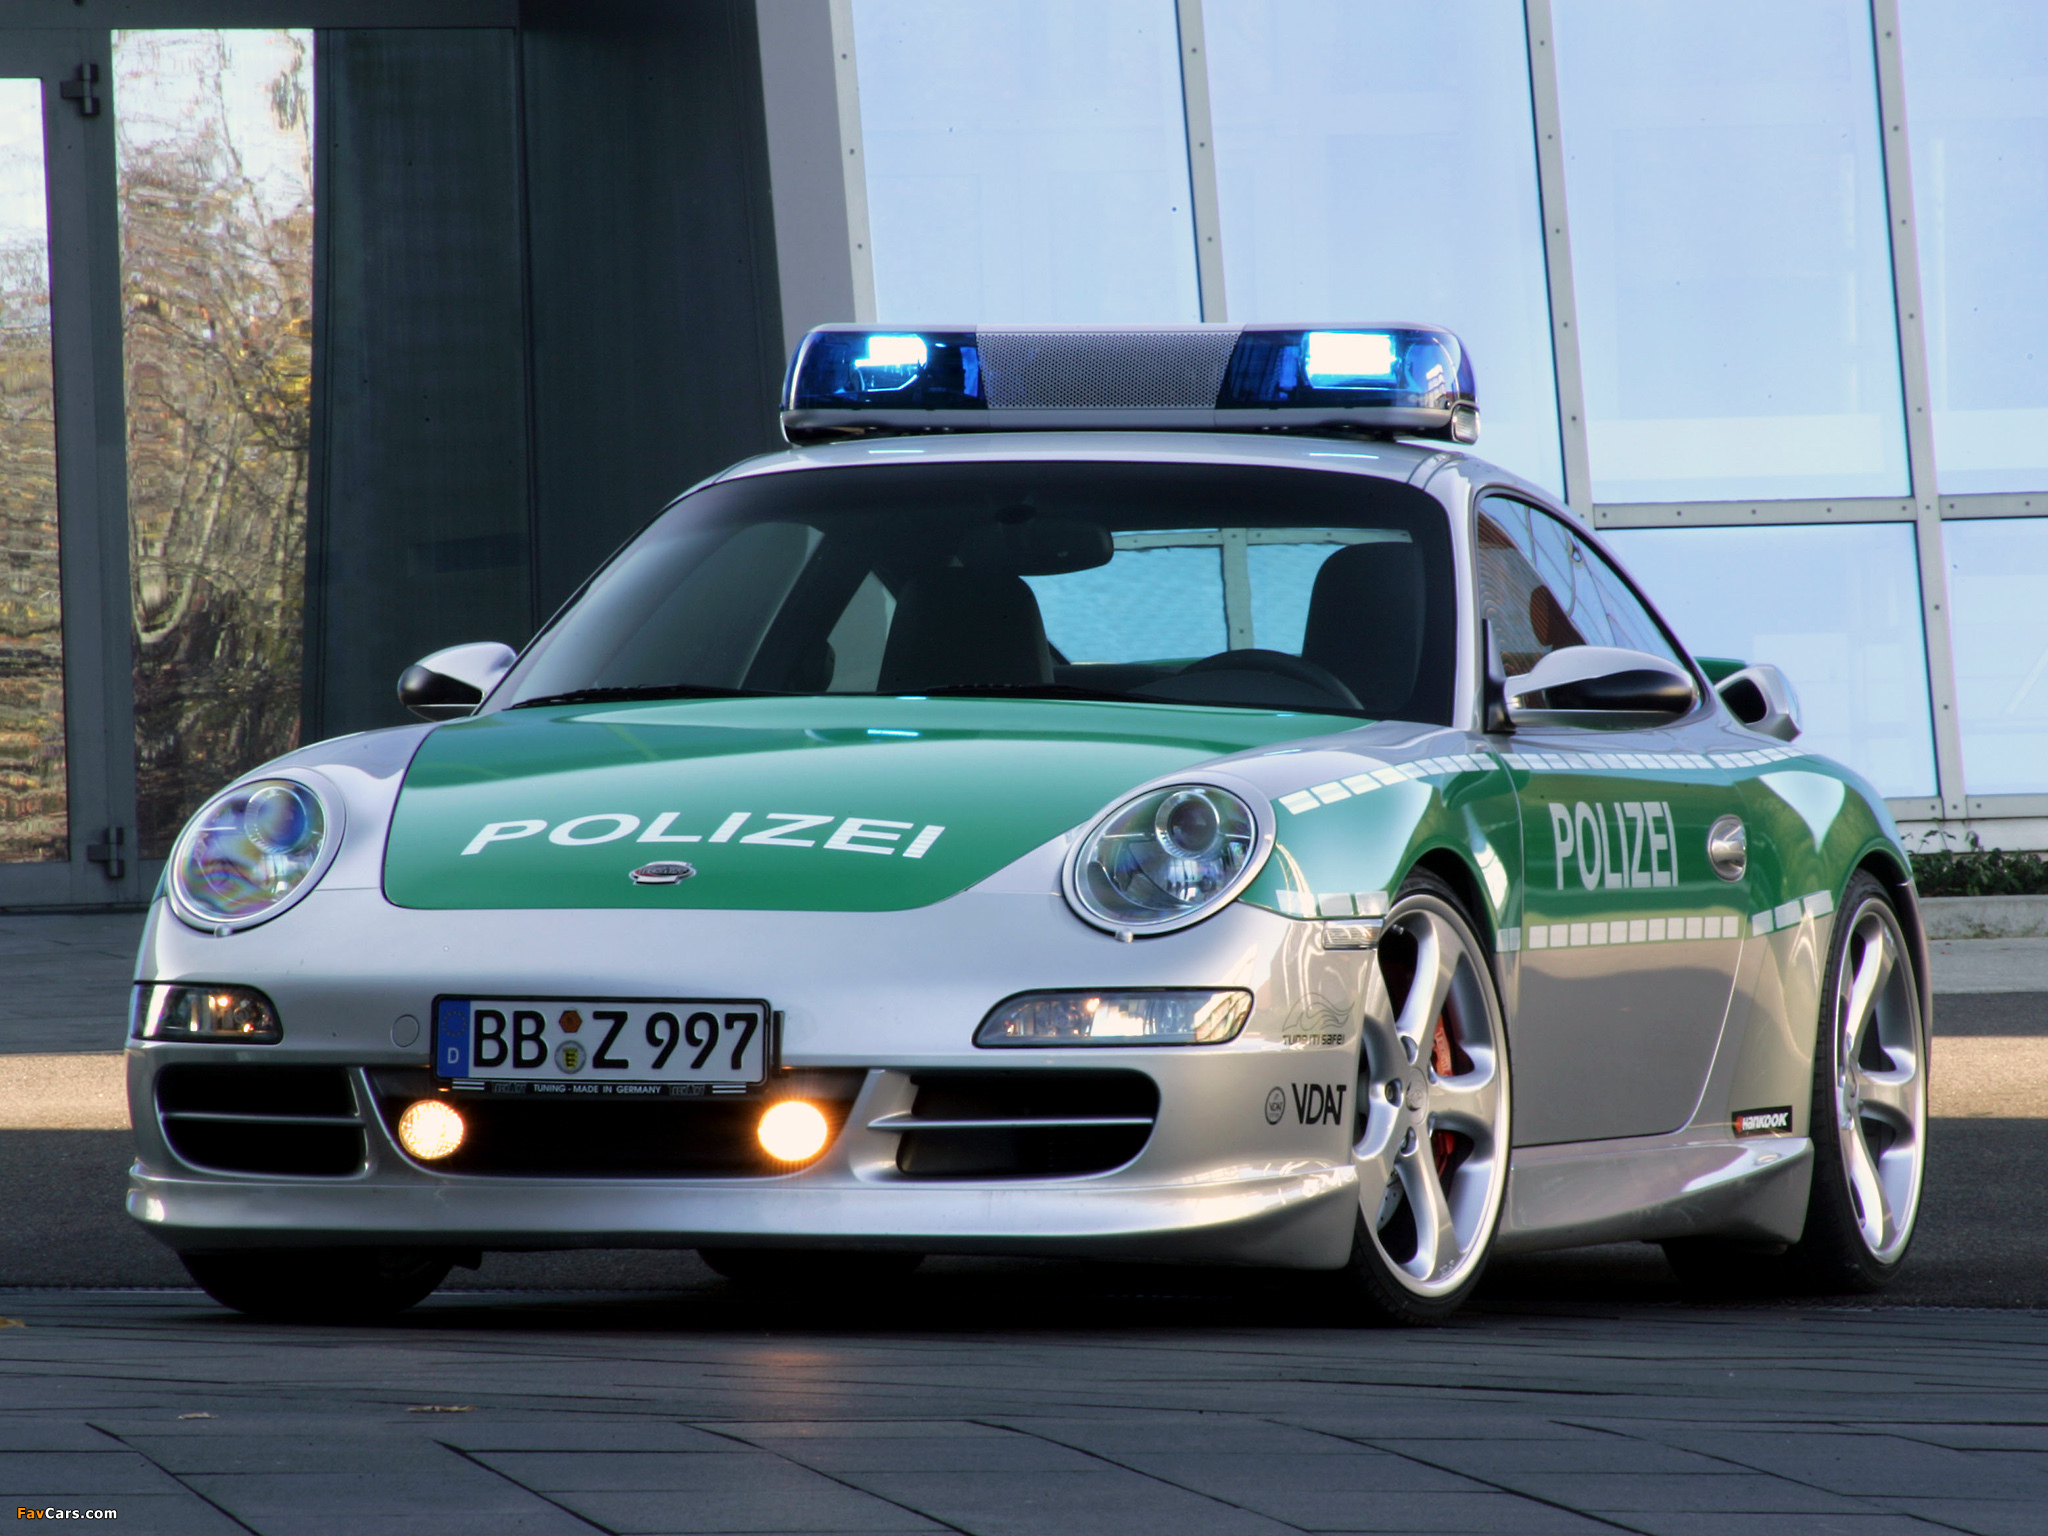 Нужны полицейские машины. Порше 911 полиция Германия. Порше 911 полиция. 911 Порше Police. Полицейский Porsche 911.